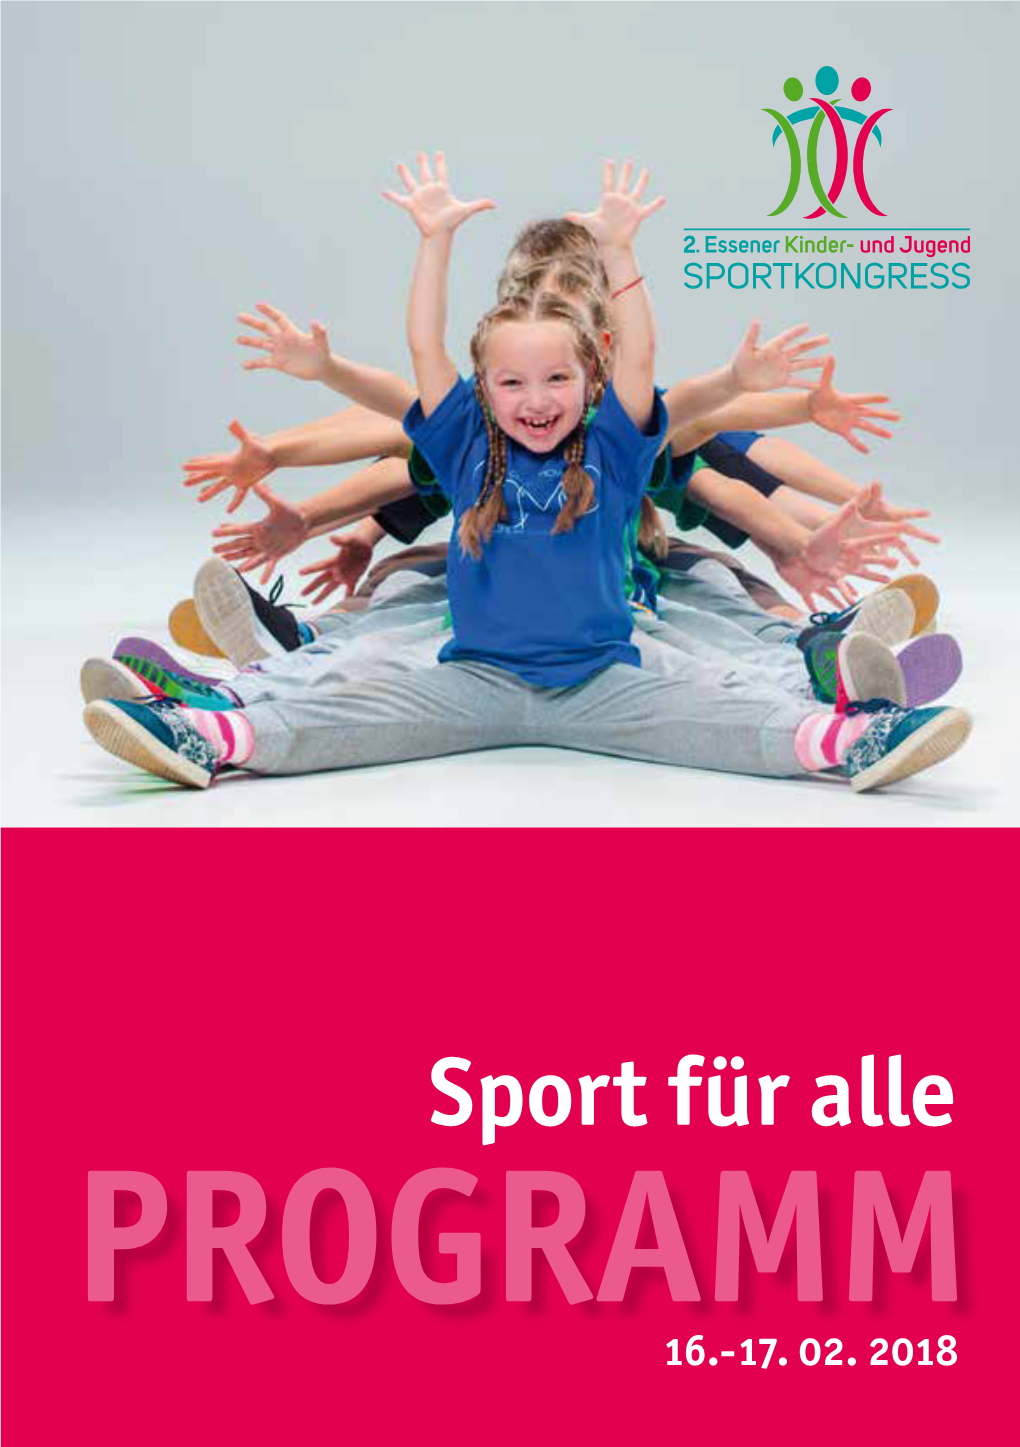 Sport Für Alle PROGRAMM 16.-17